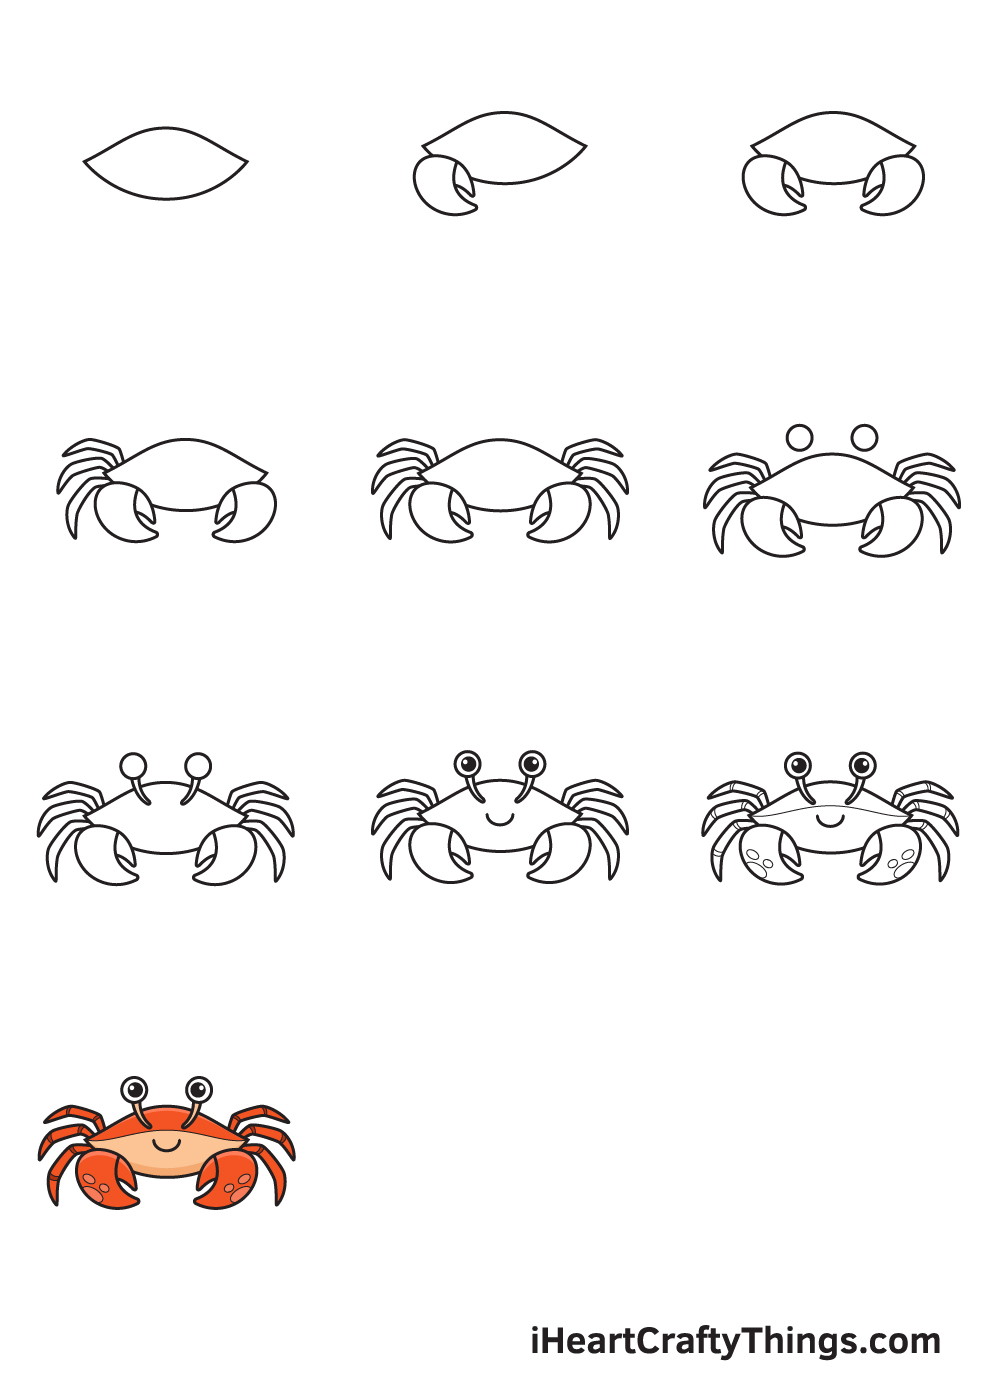 Drawing Crab in 10 Easy Steps - Hướng dẫn chi tiết cách vẽ con cua đơn giản với 9 bước cơ bản